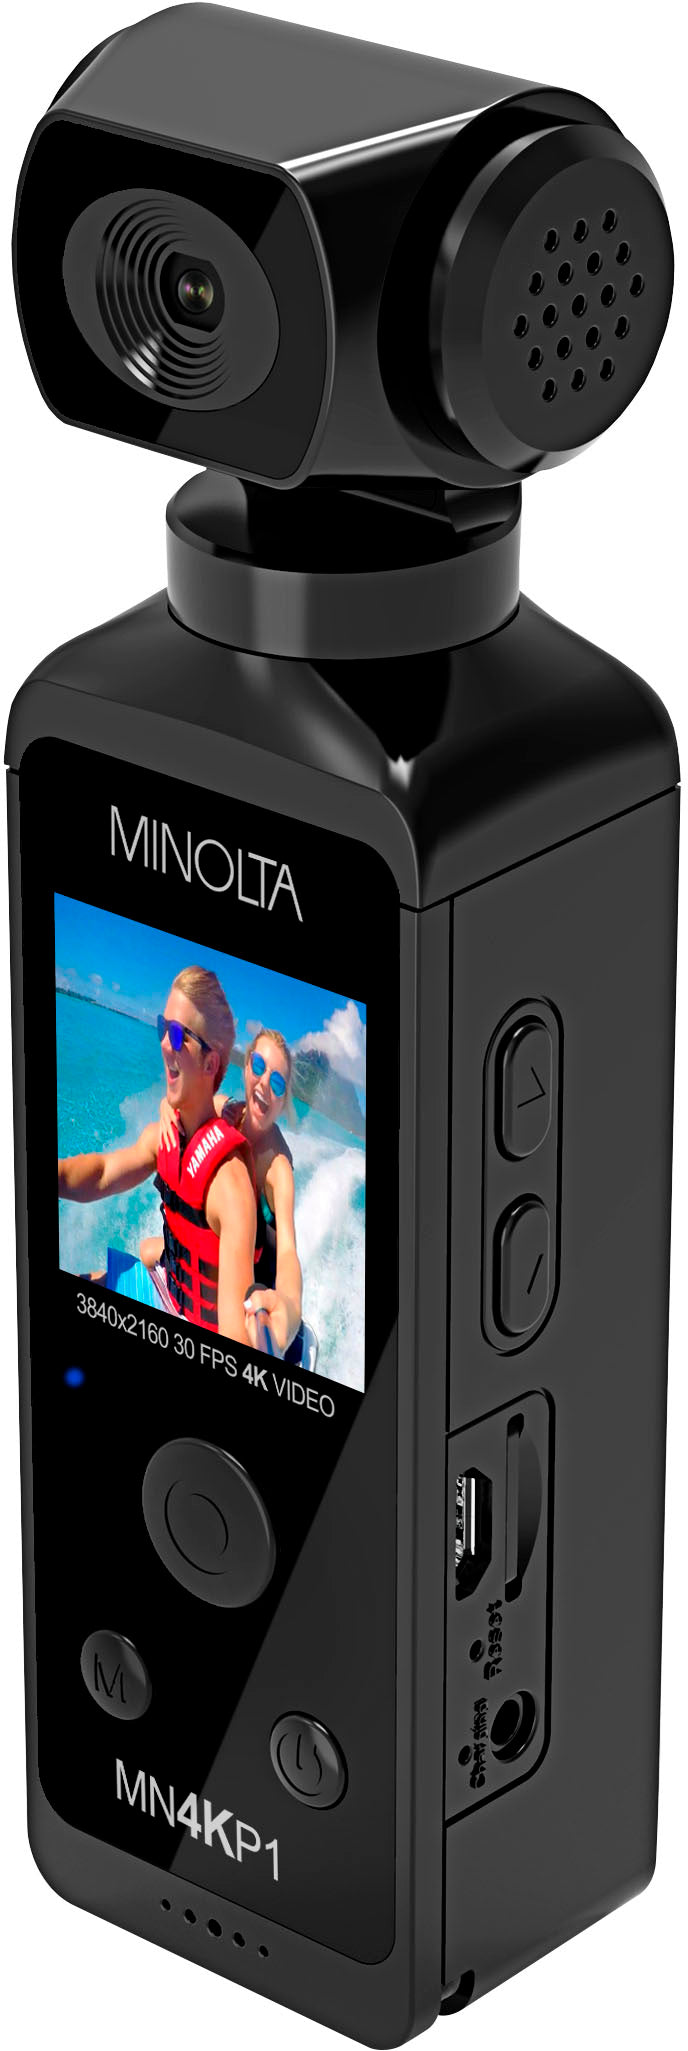 Konica Minolta - MN4KP1 4K Ultra HD WiFi Camcorder Kit - Black_2